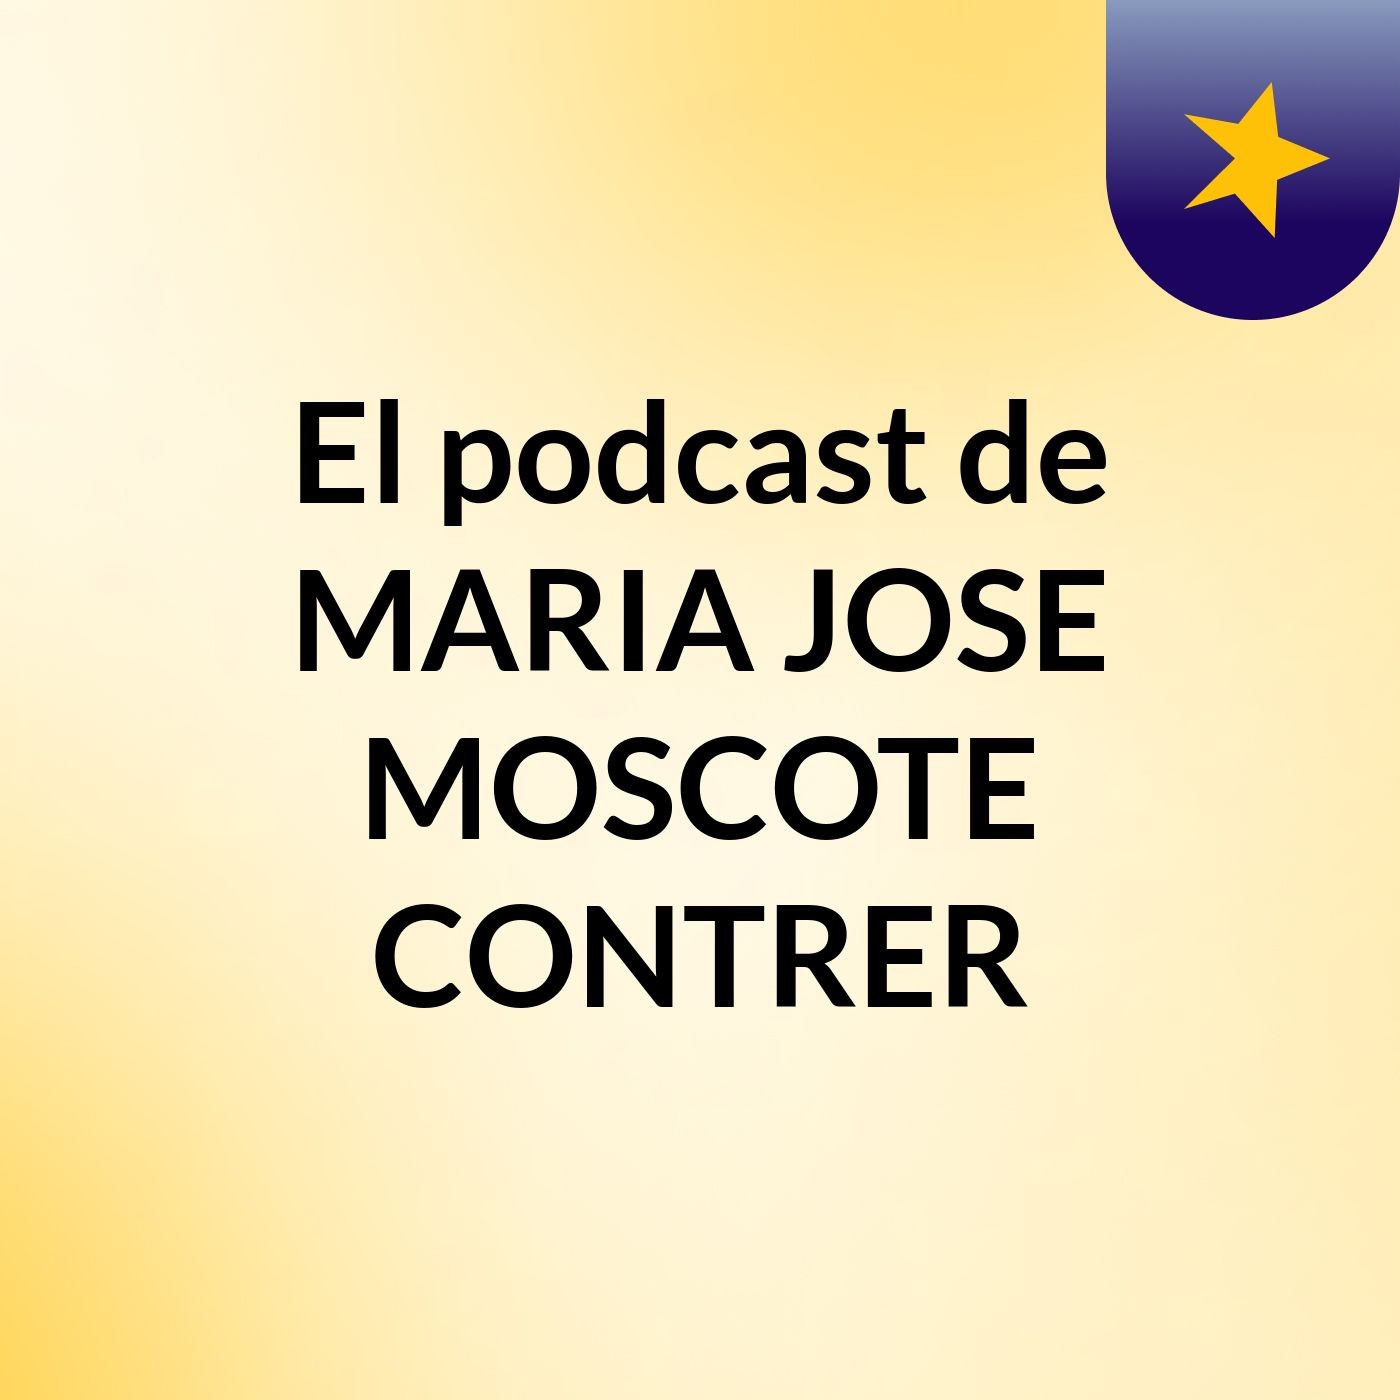 El podcast de MARIA JOSE MOSCOTE CONTRER